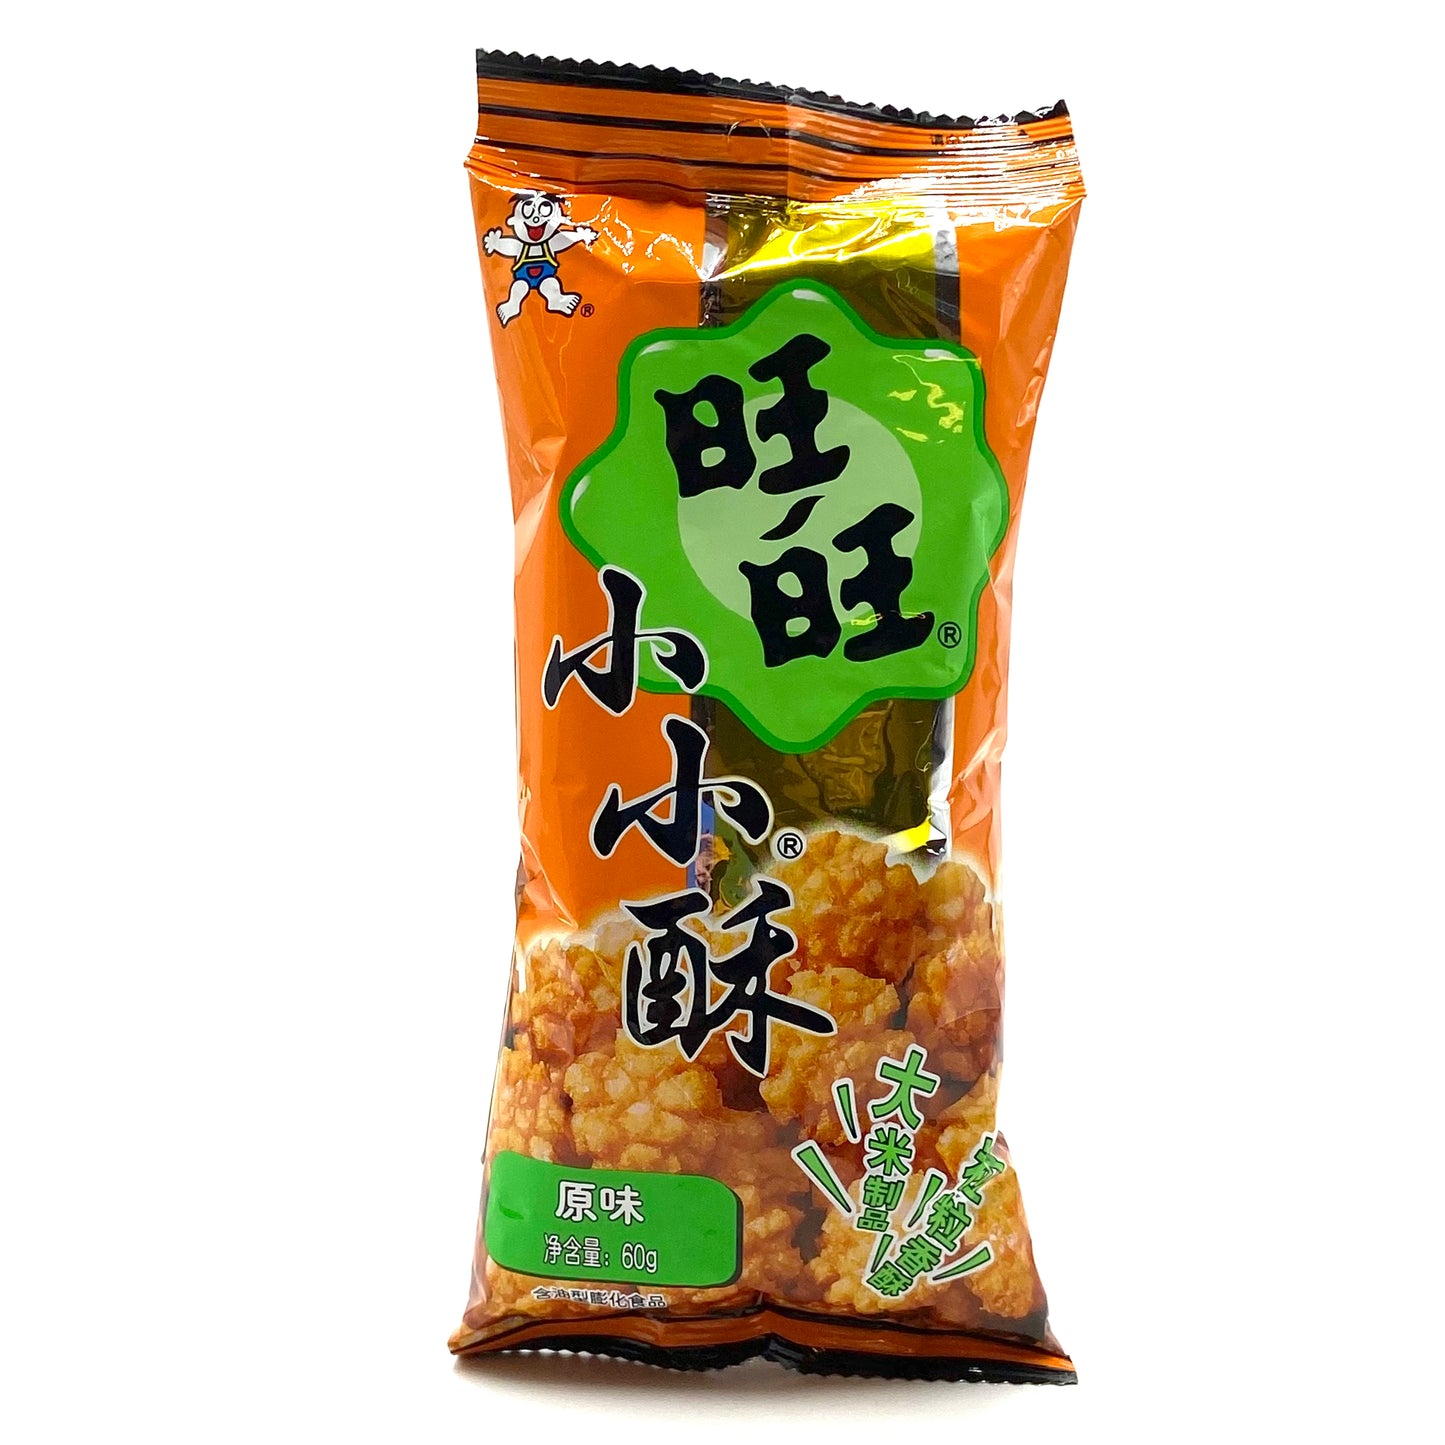 WantWant snack croccante originale 60g 旺旺小小酥 原味